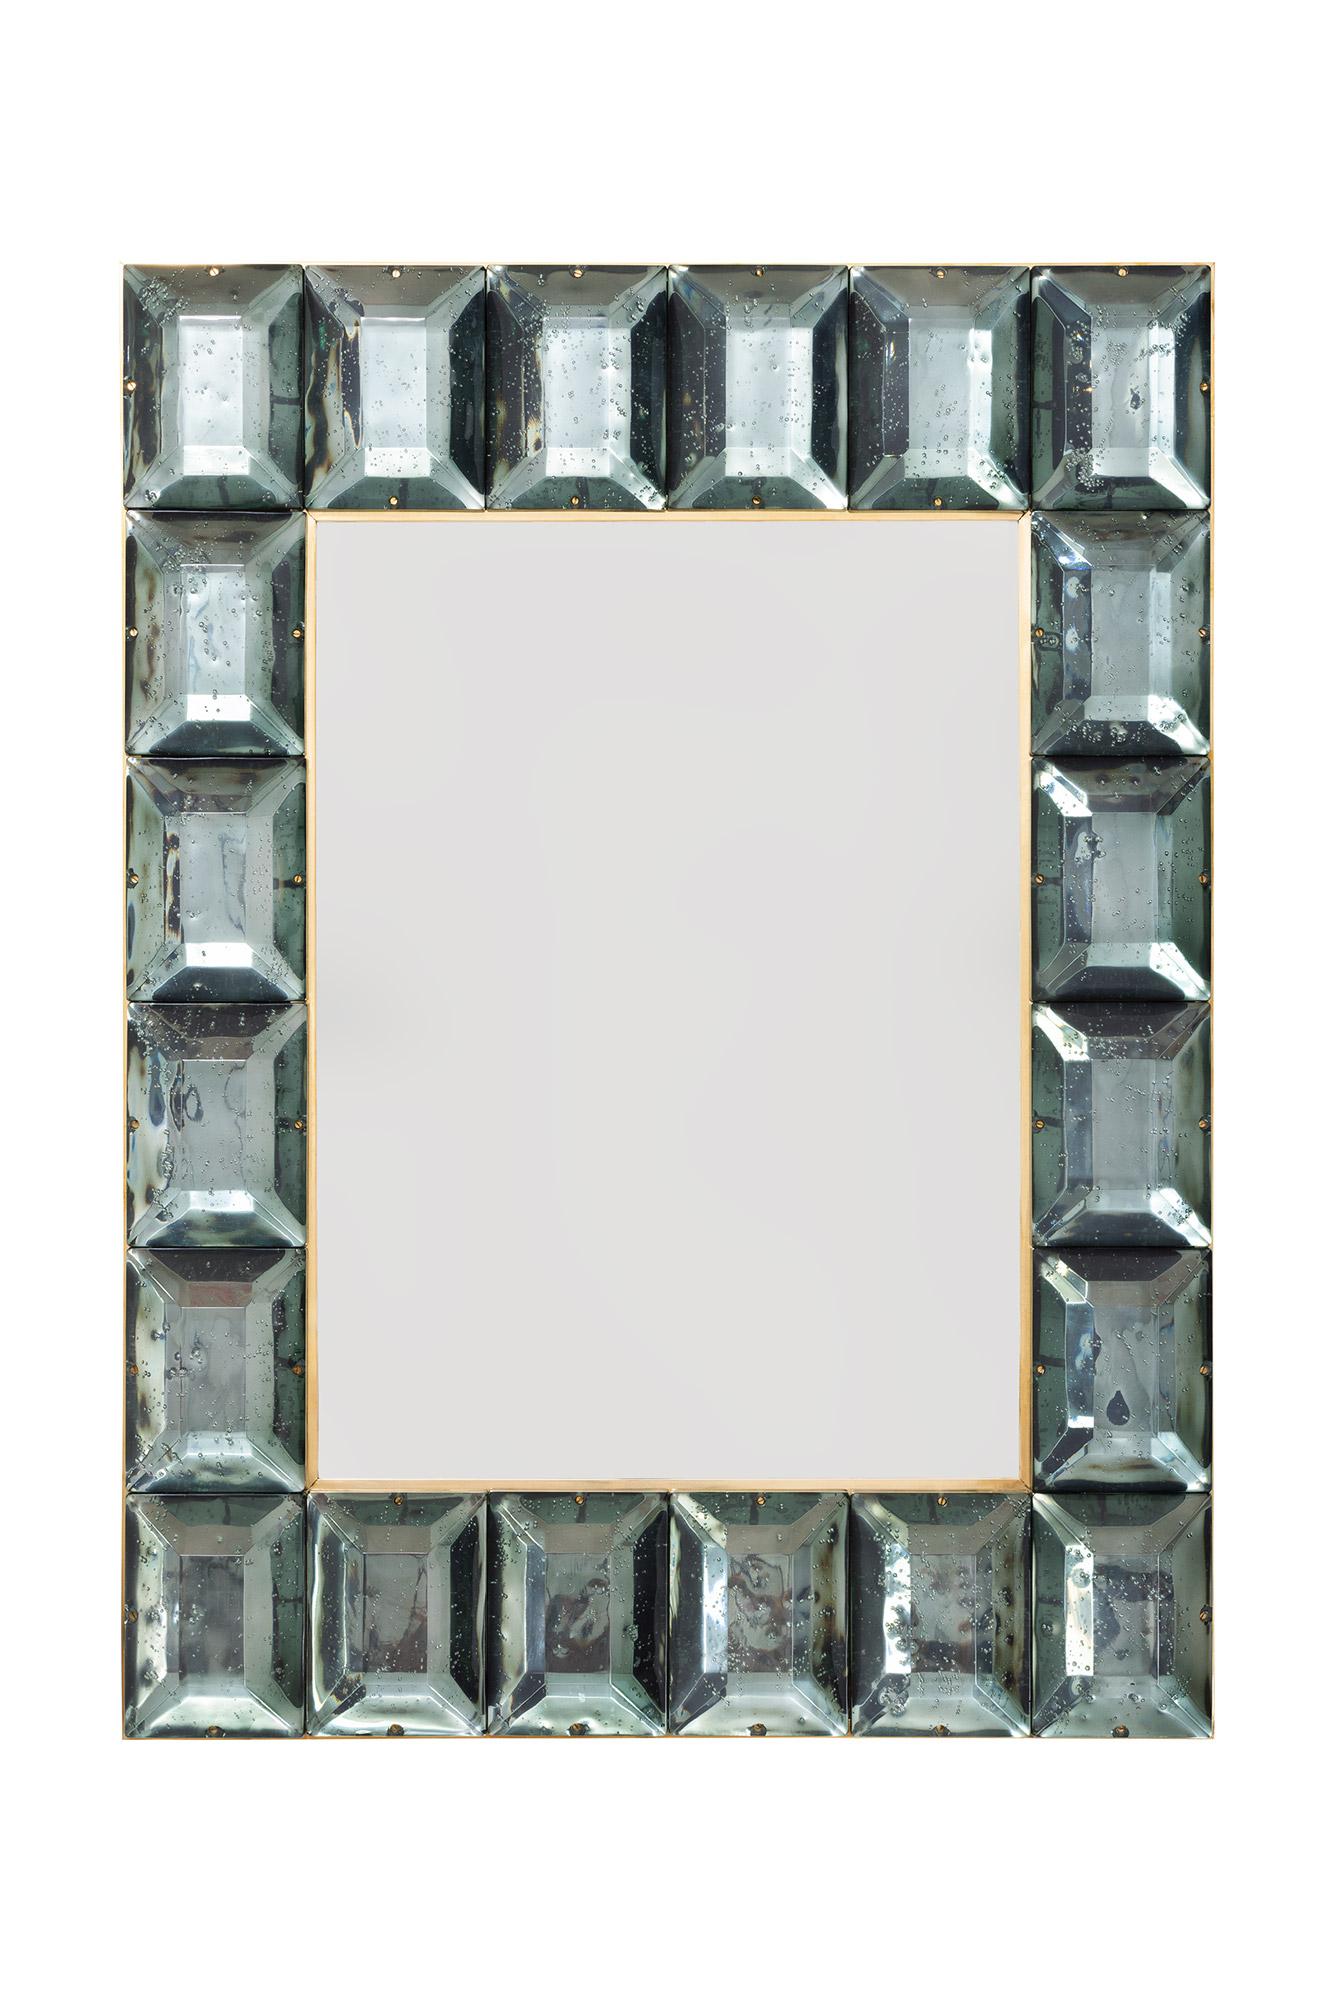  Paar zeitgenössische meergrüne diamantene Murano-Glasblockspiegel, auf Lager
Individuell gestaltbarer Spiegel mit Rahmen aus facettiertem Murano-Glas, eingefasst in Messing und  Luxus, der von einem Team von Kunsthandwerkern in Venedig, Italien,